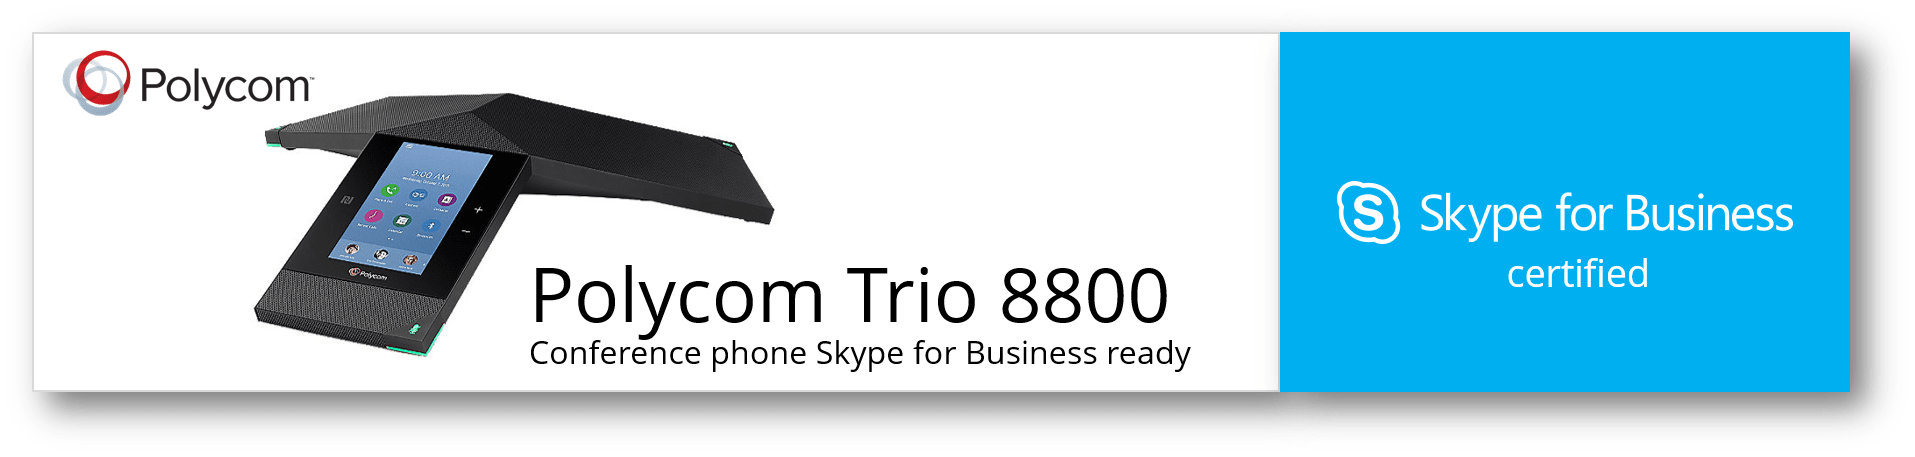 Polycom Trio 8800 from VCG